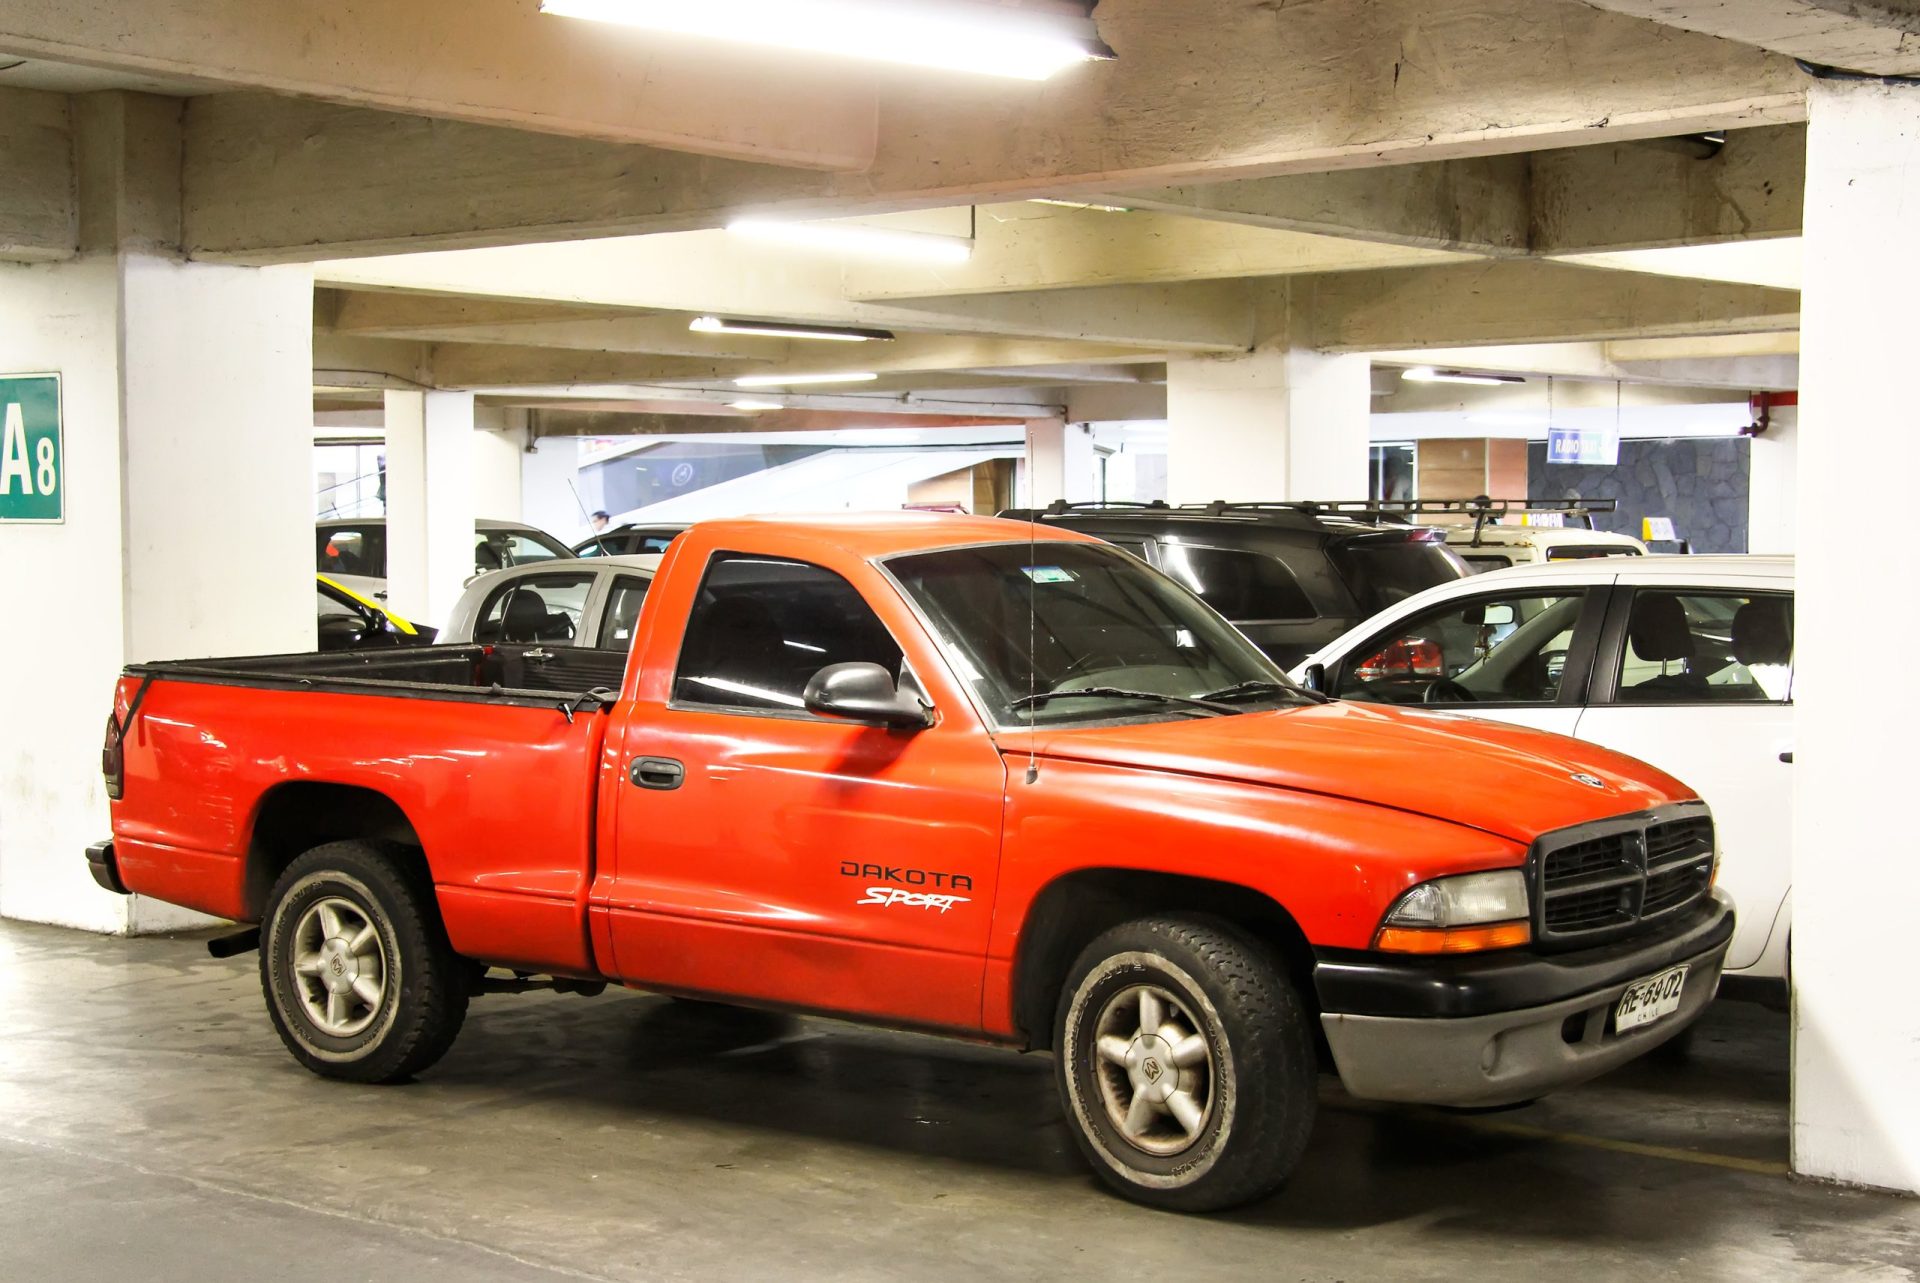 2004 Dodge Dakota at the underground parking.